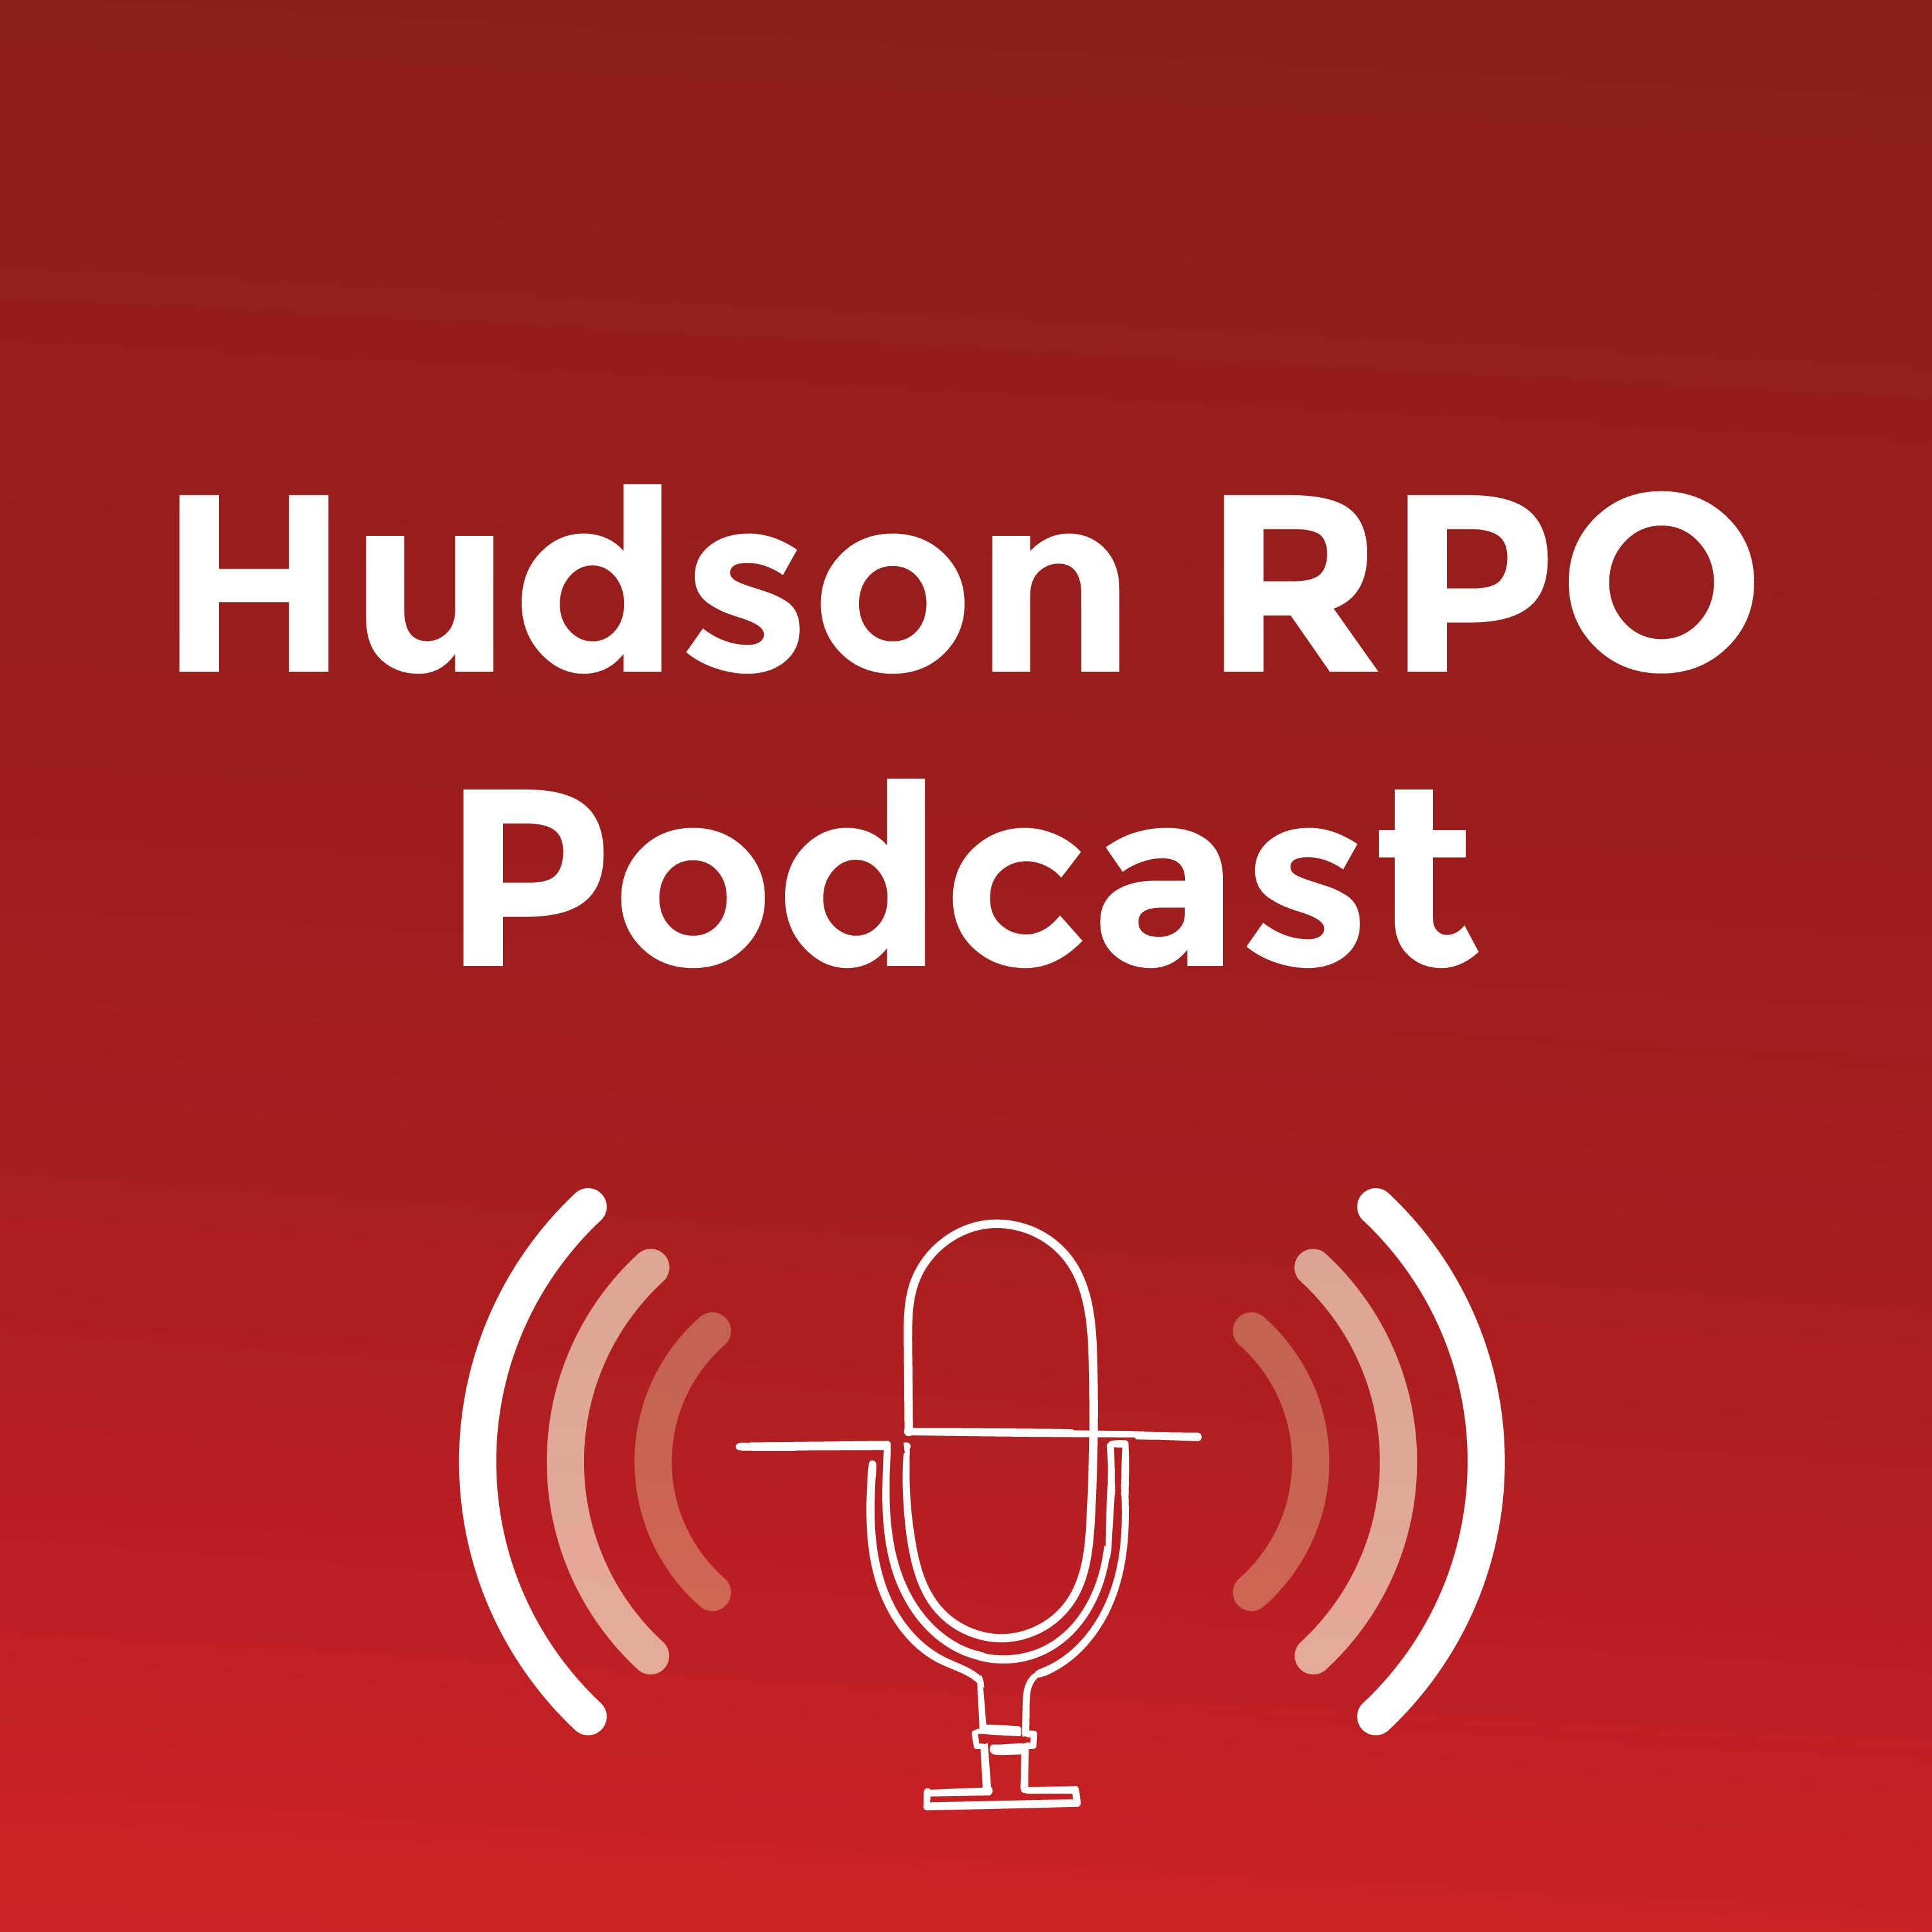 Hudson RPO_Podcast app logo_v